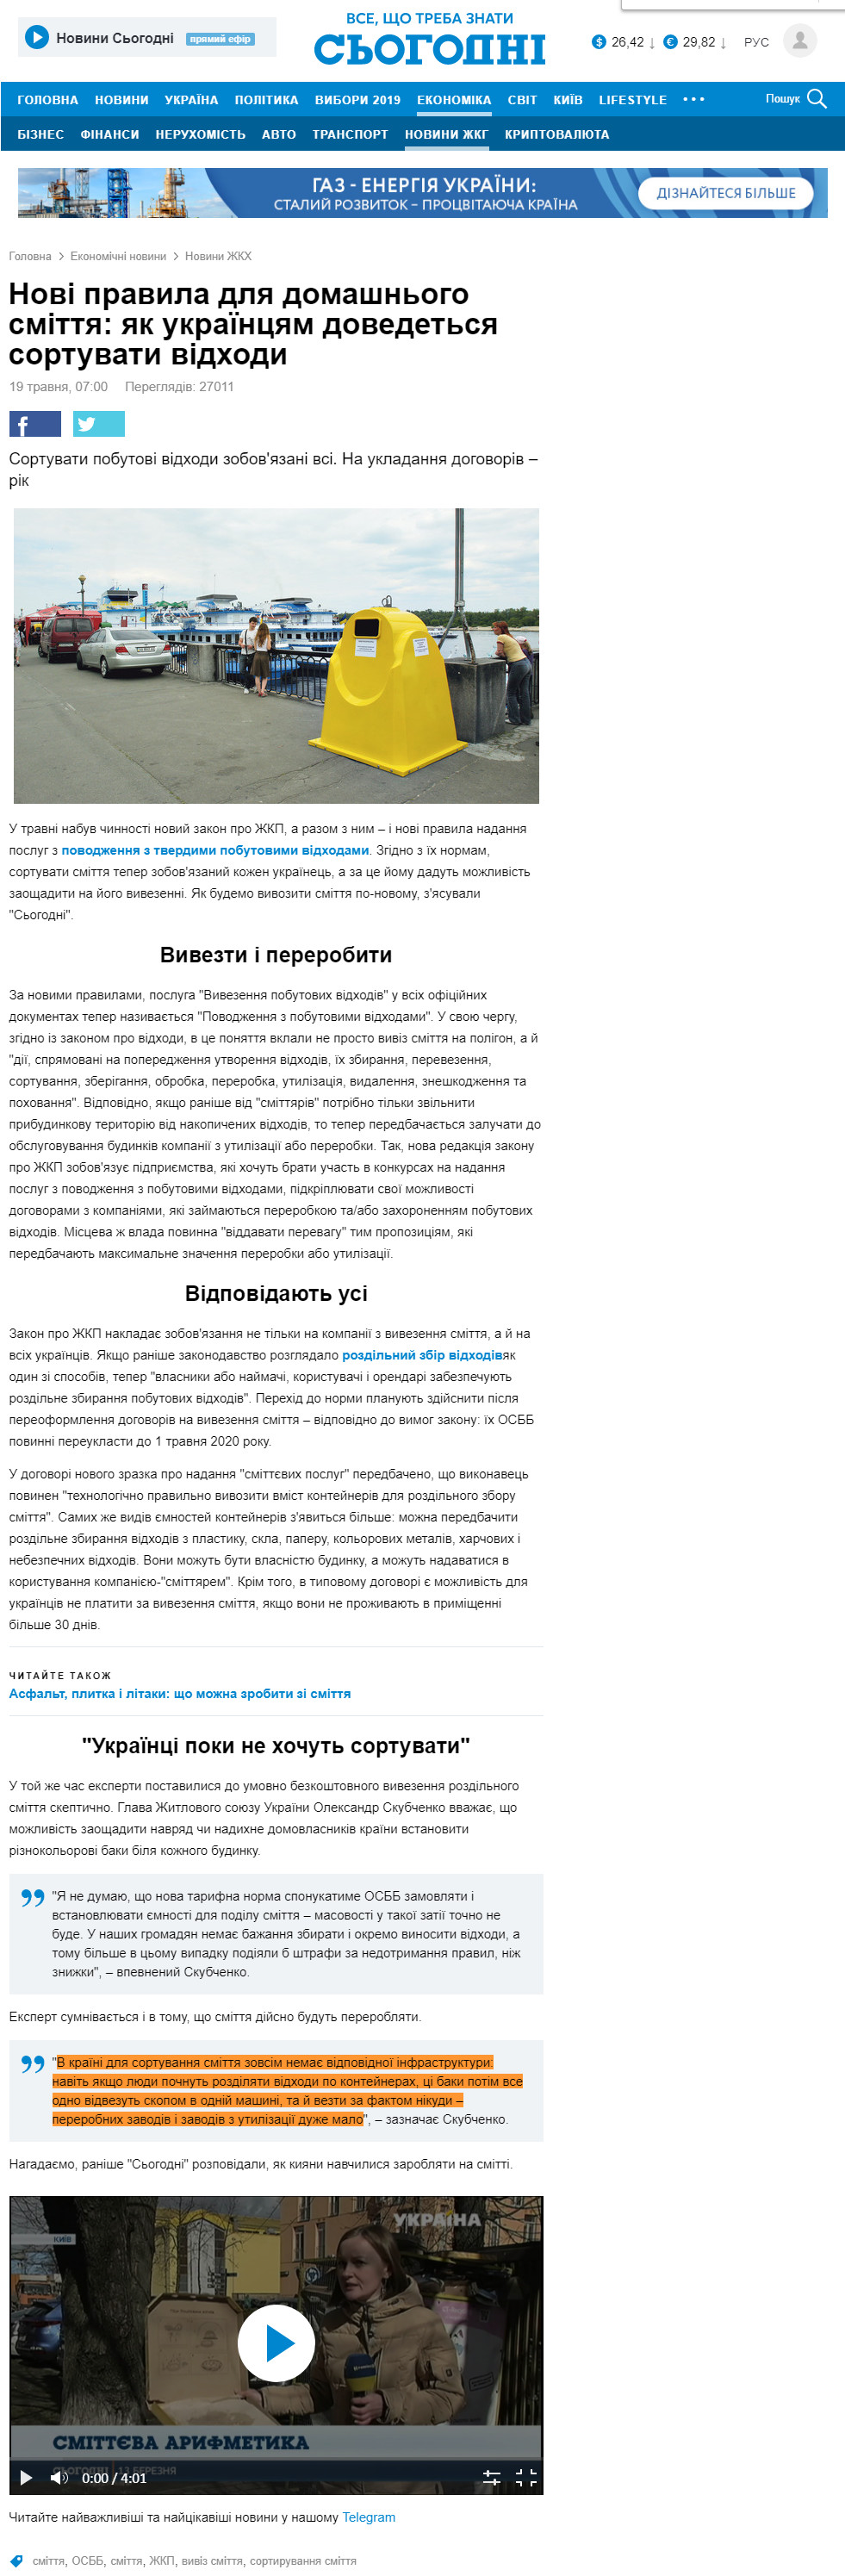 https://ukr.segodnya.ua/economics/gkh/novye-pravila-dlya-domashnego-musora-kak-ukraincam-pridetsya-sortirovat-othody-1264392.html